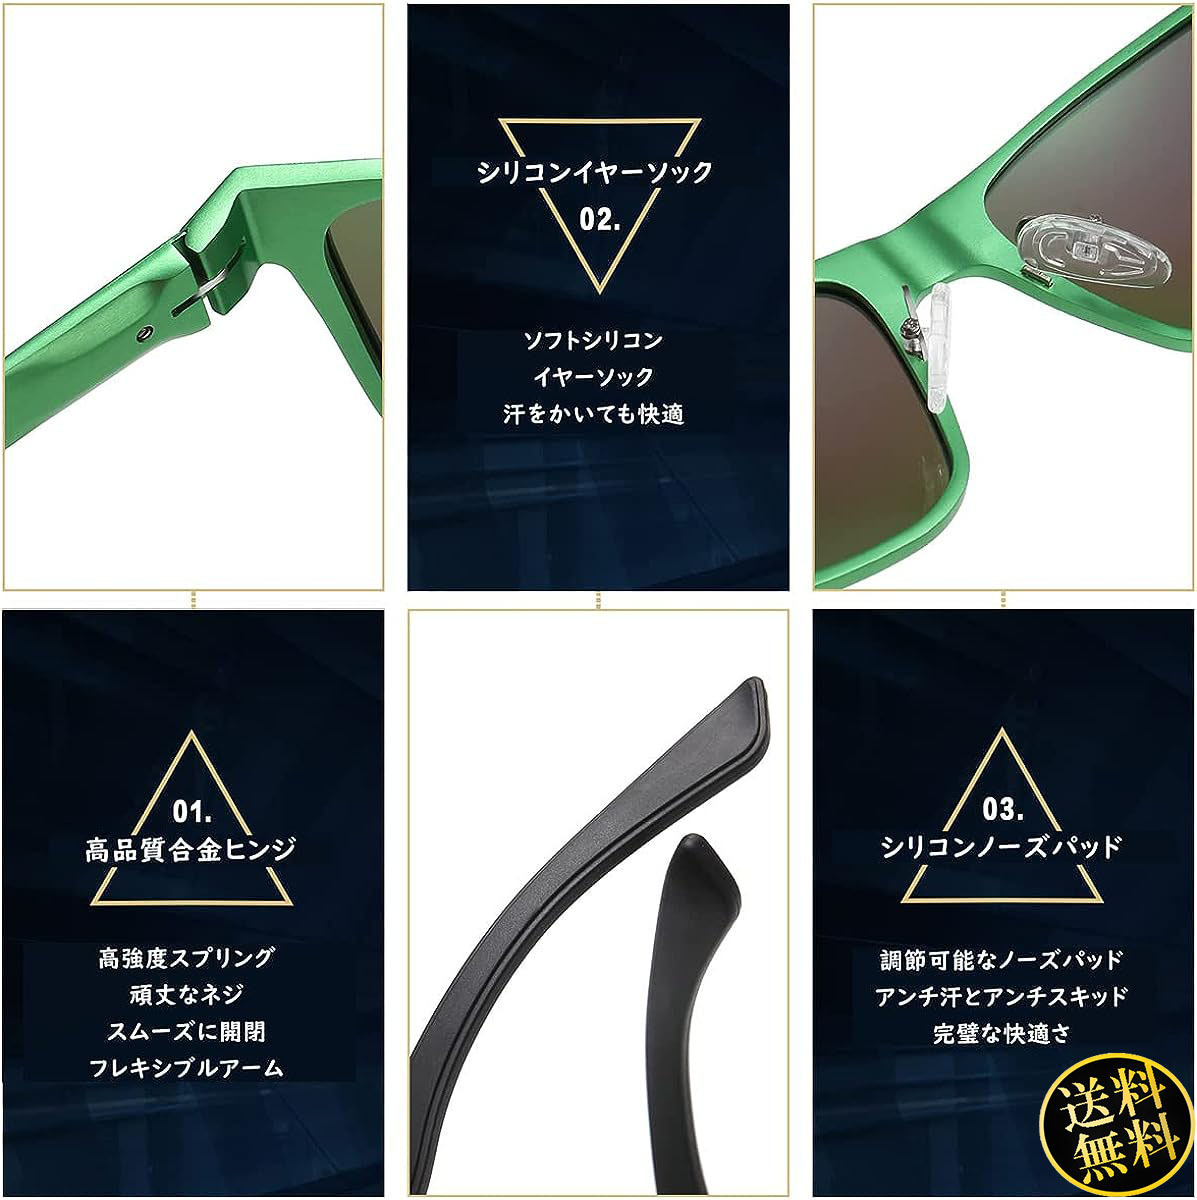 【個性的で洗練された魅力を持つ】 スポーツサングラス グリーンTAC偏光レンズ 高炭素繊維テンプル ファッション アイテム 日本人